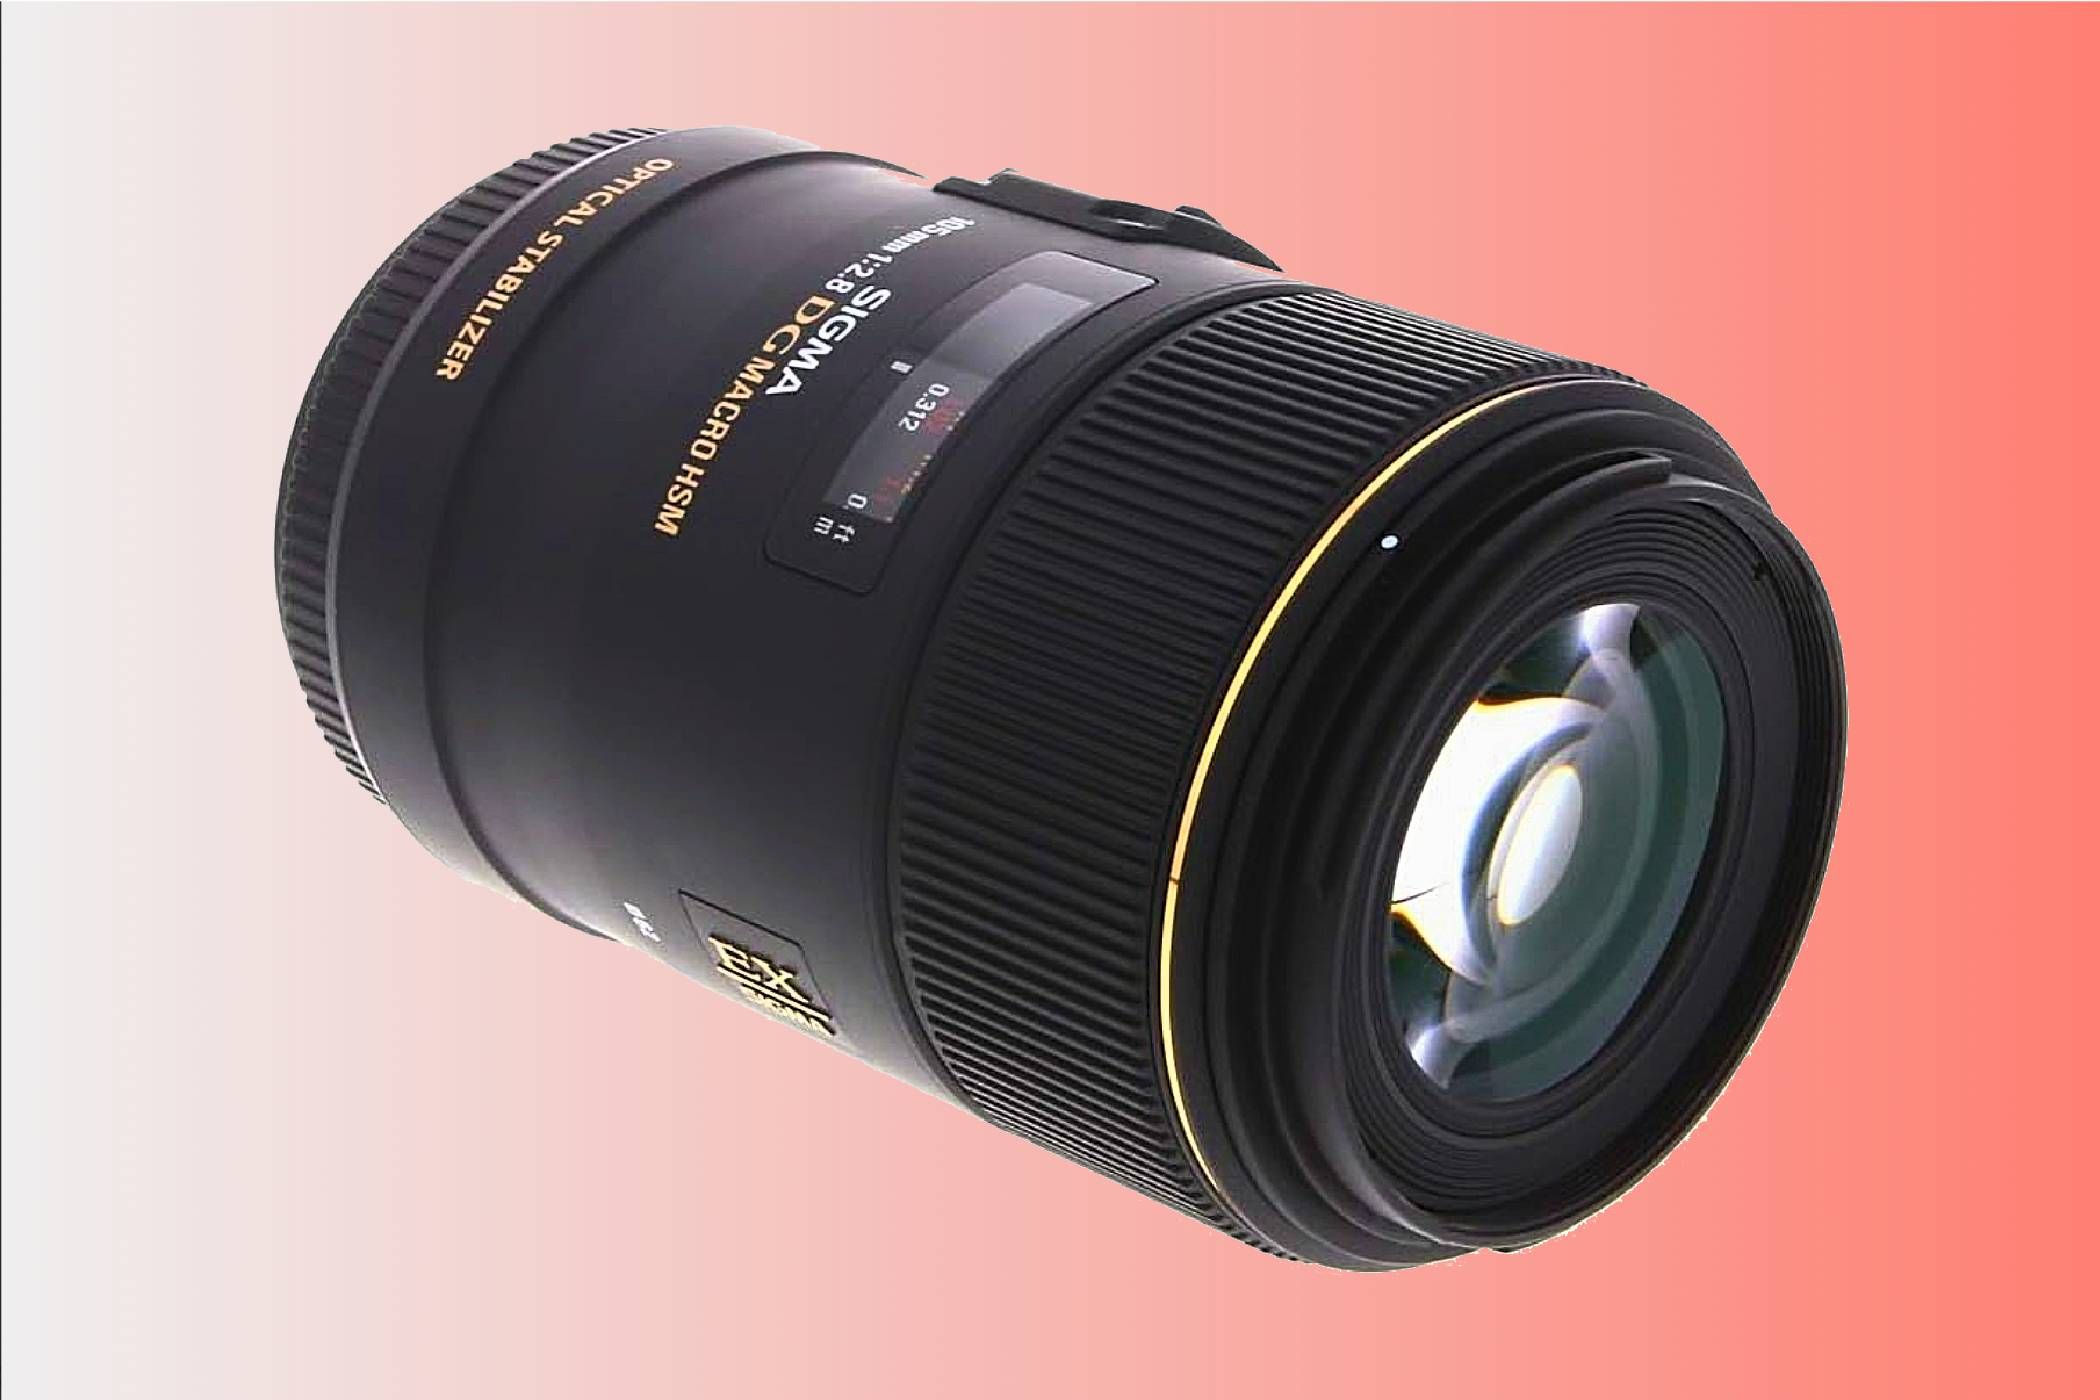 A Sigma 105mm F2.8 EX DG OS HSM macro lens